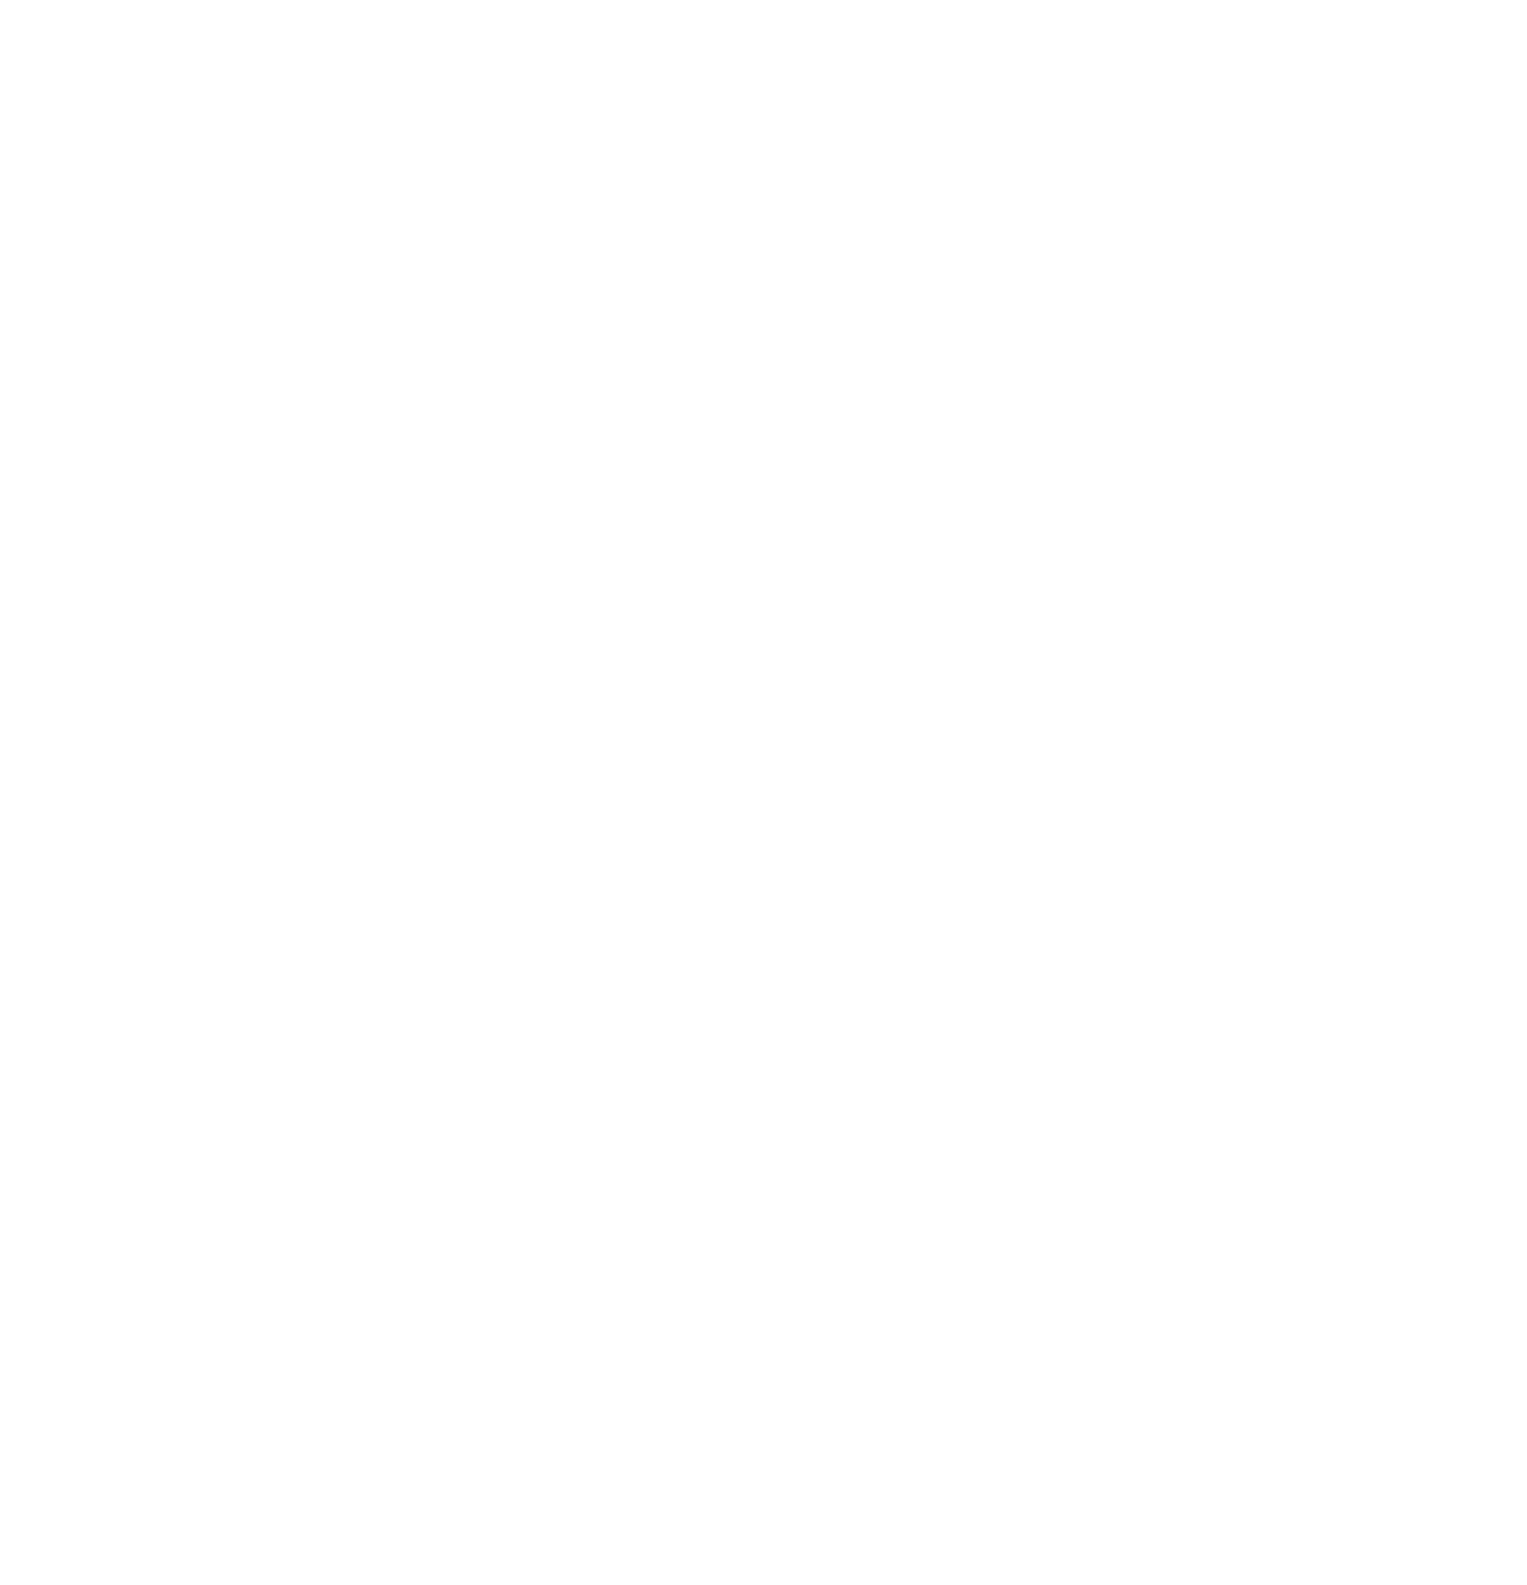 VirTra logo for dark backgrounds (transparent PNG)